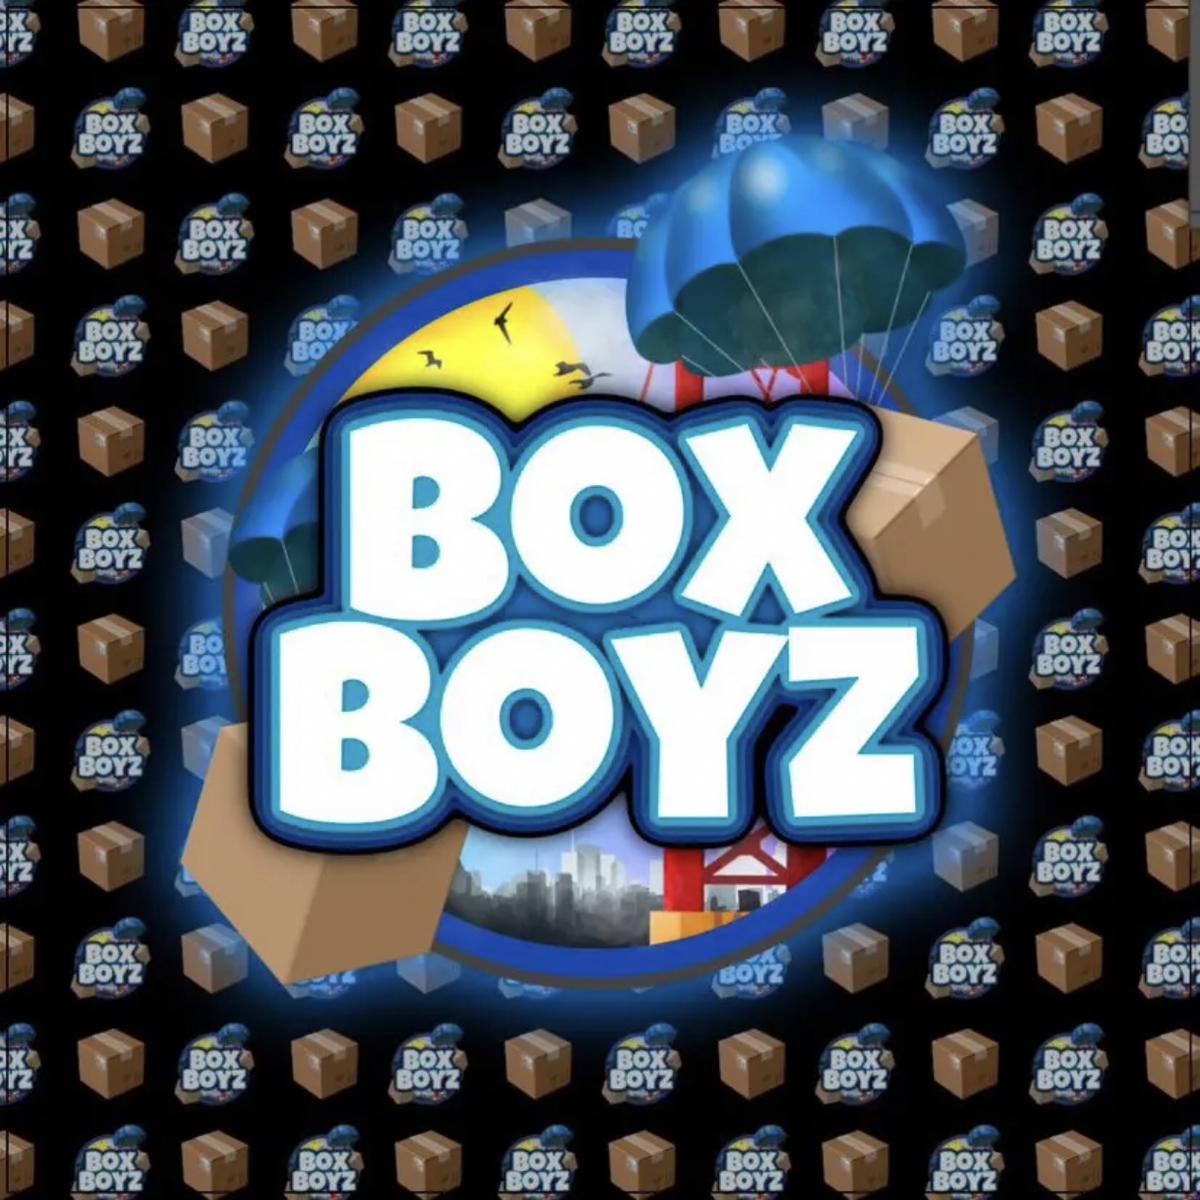 BoxBoyz